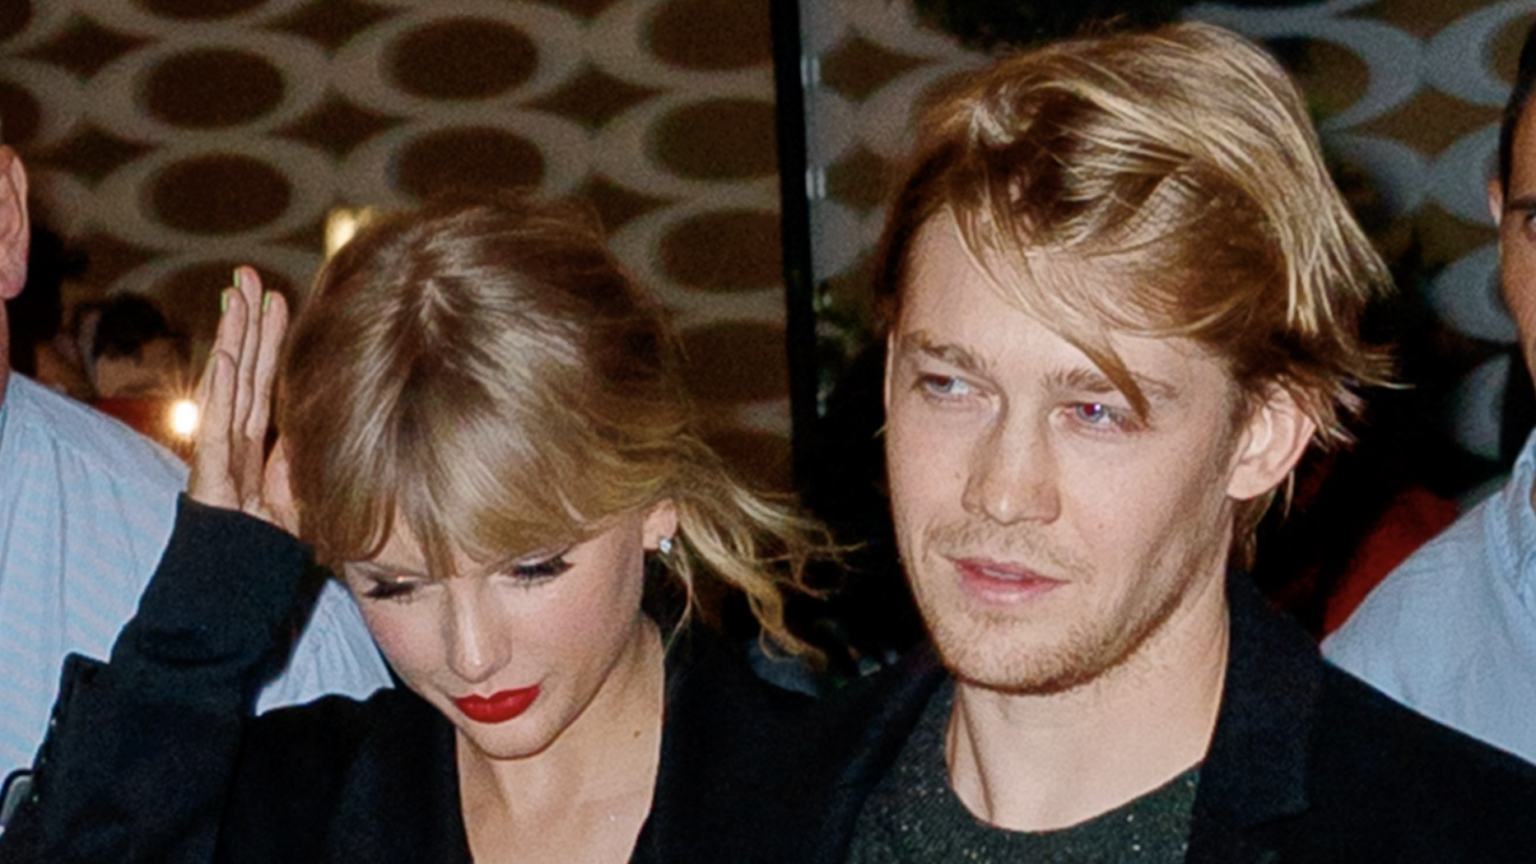 Taylor Swift verrät, dass sie während ihrer Beziehung mit Joe Alwyn „einsam“ war – StyleCaster